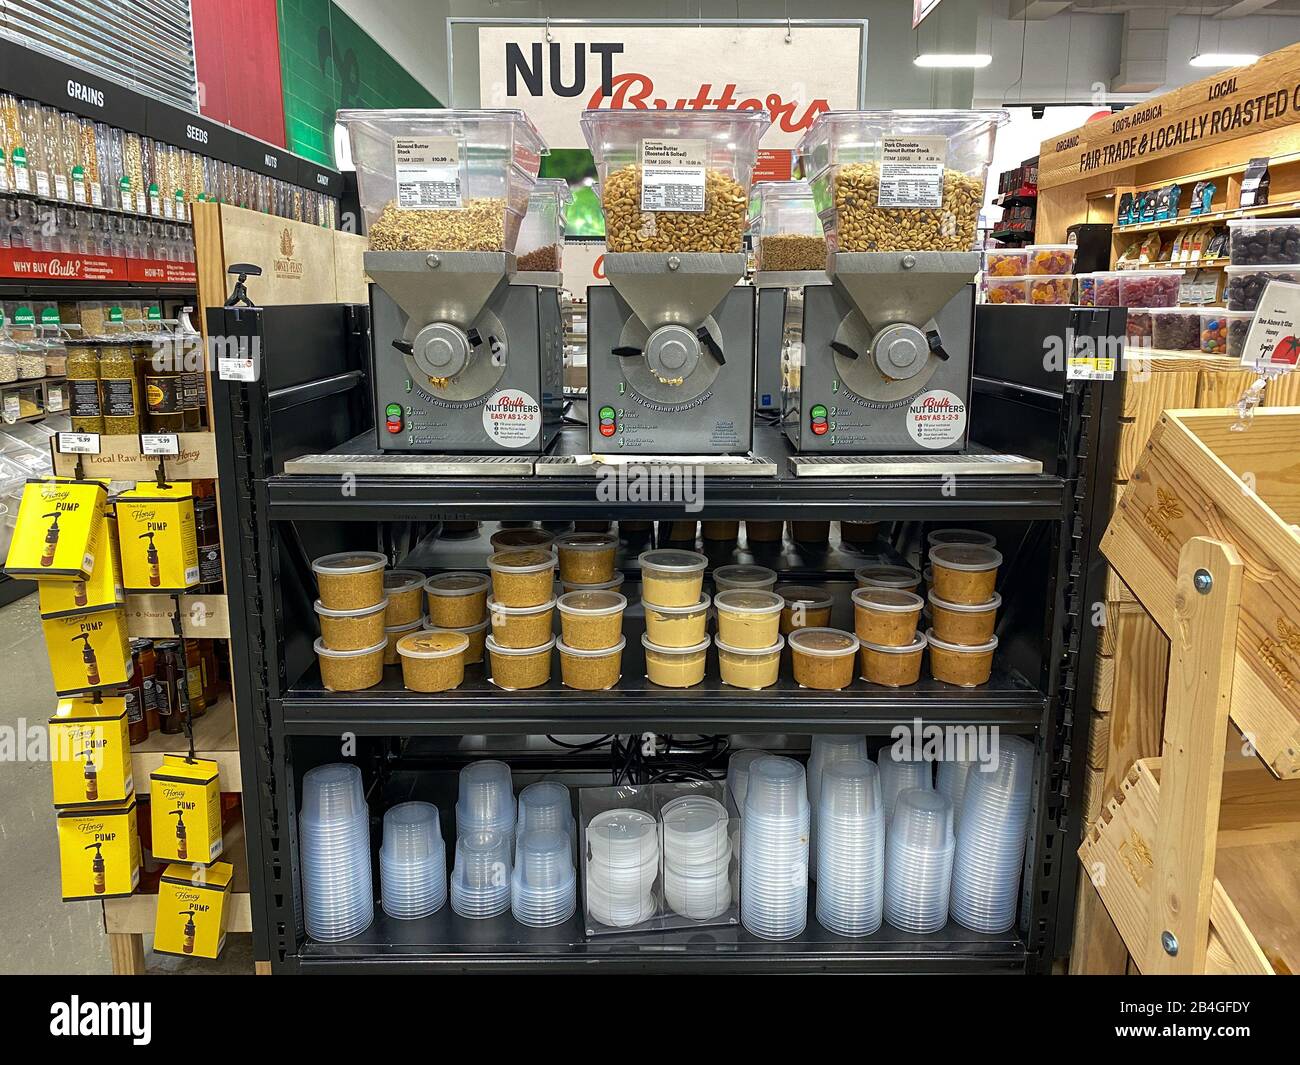 Orlando,FL/USA-1/20/20: Un affichage d'une variété de butters en vrac d'arachides, d'amandes et de noix de cajou dans une épicerie. Banque D'Images